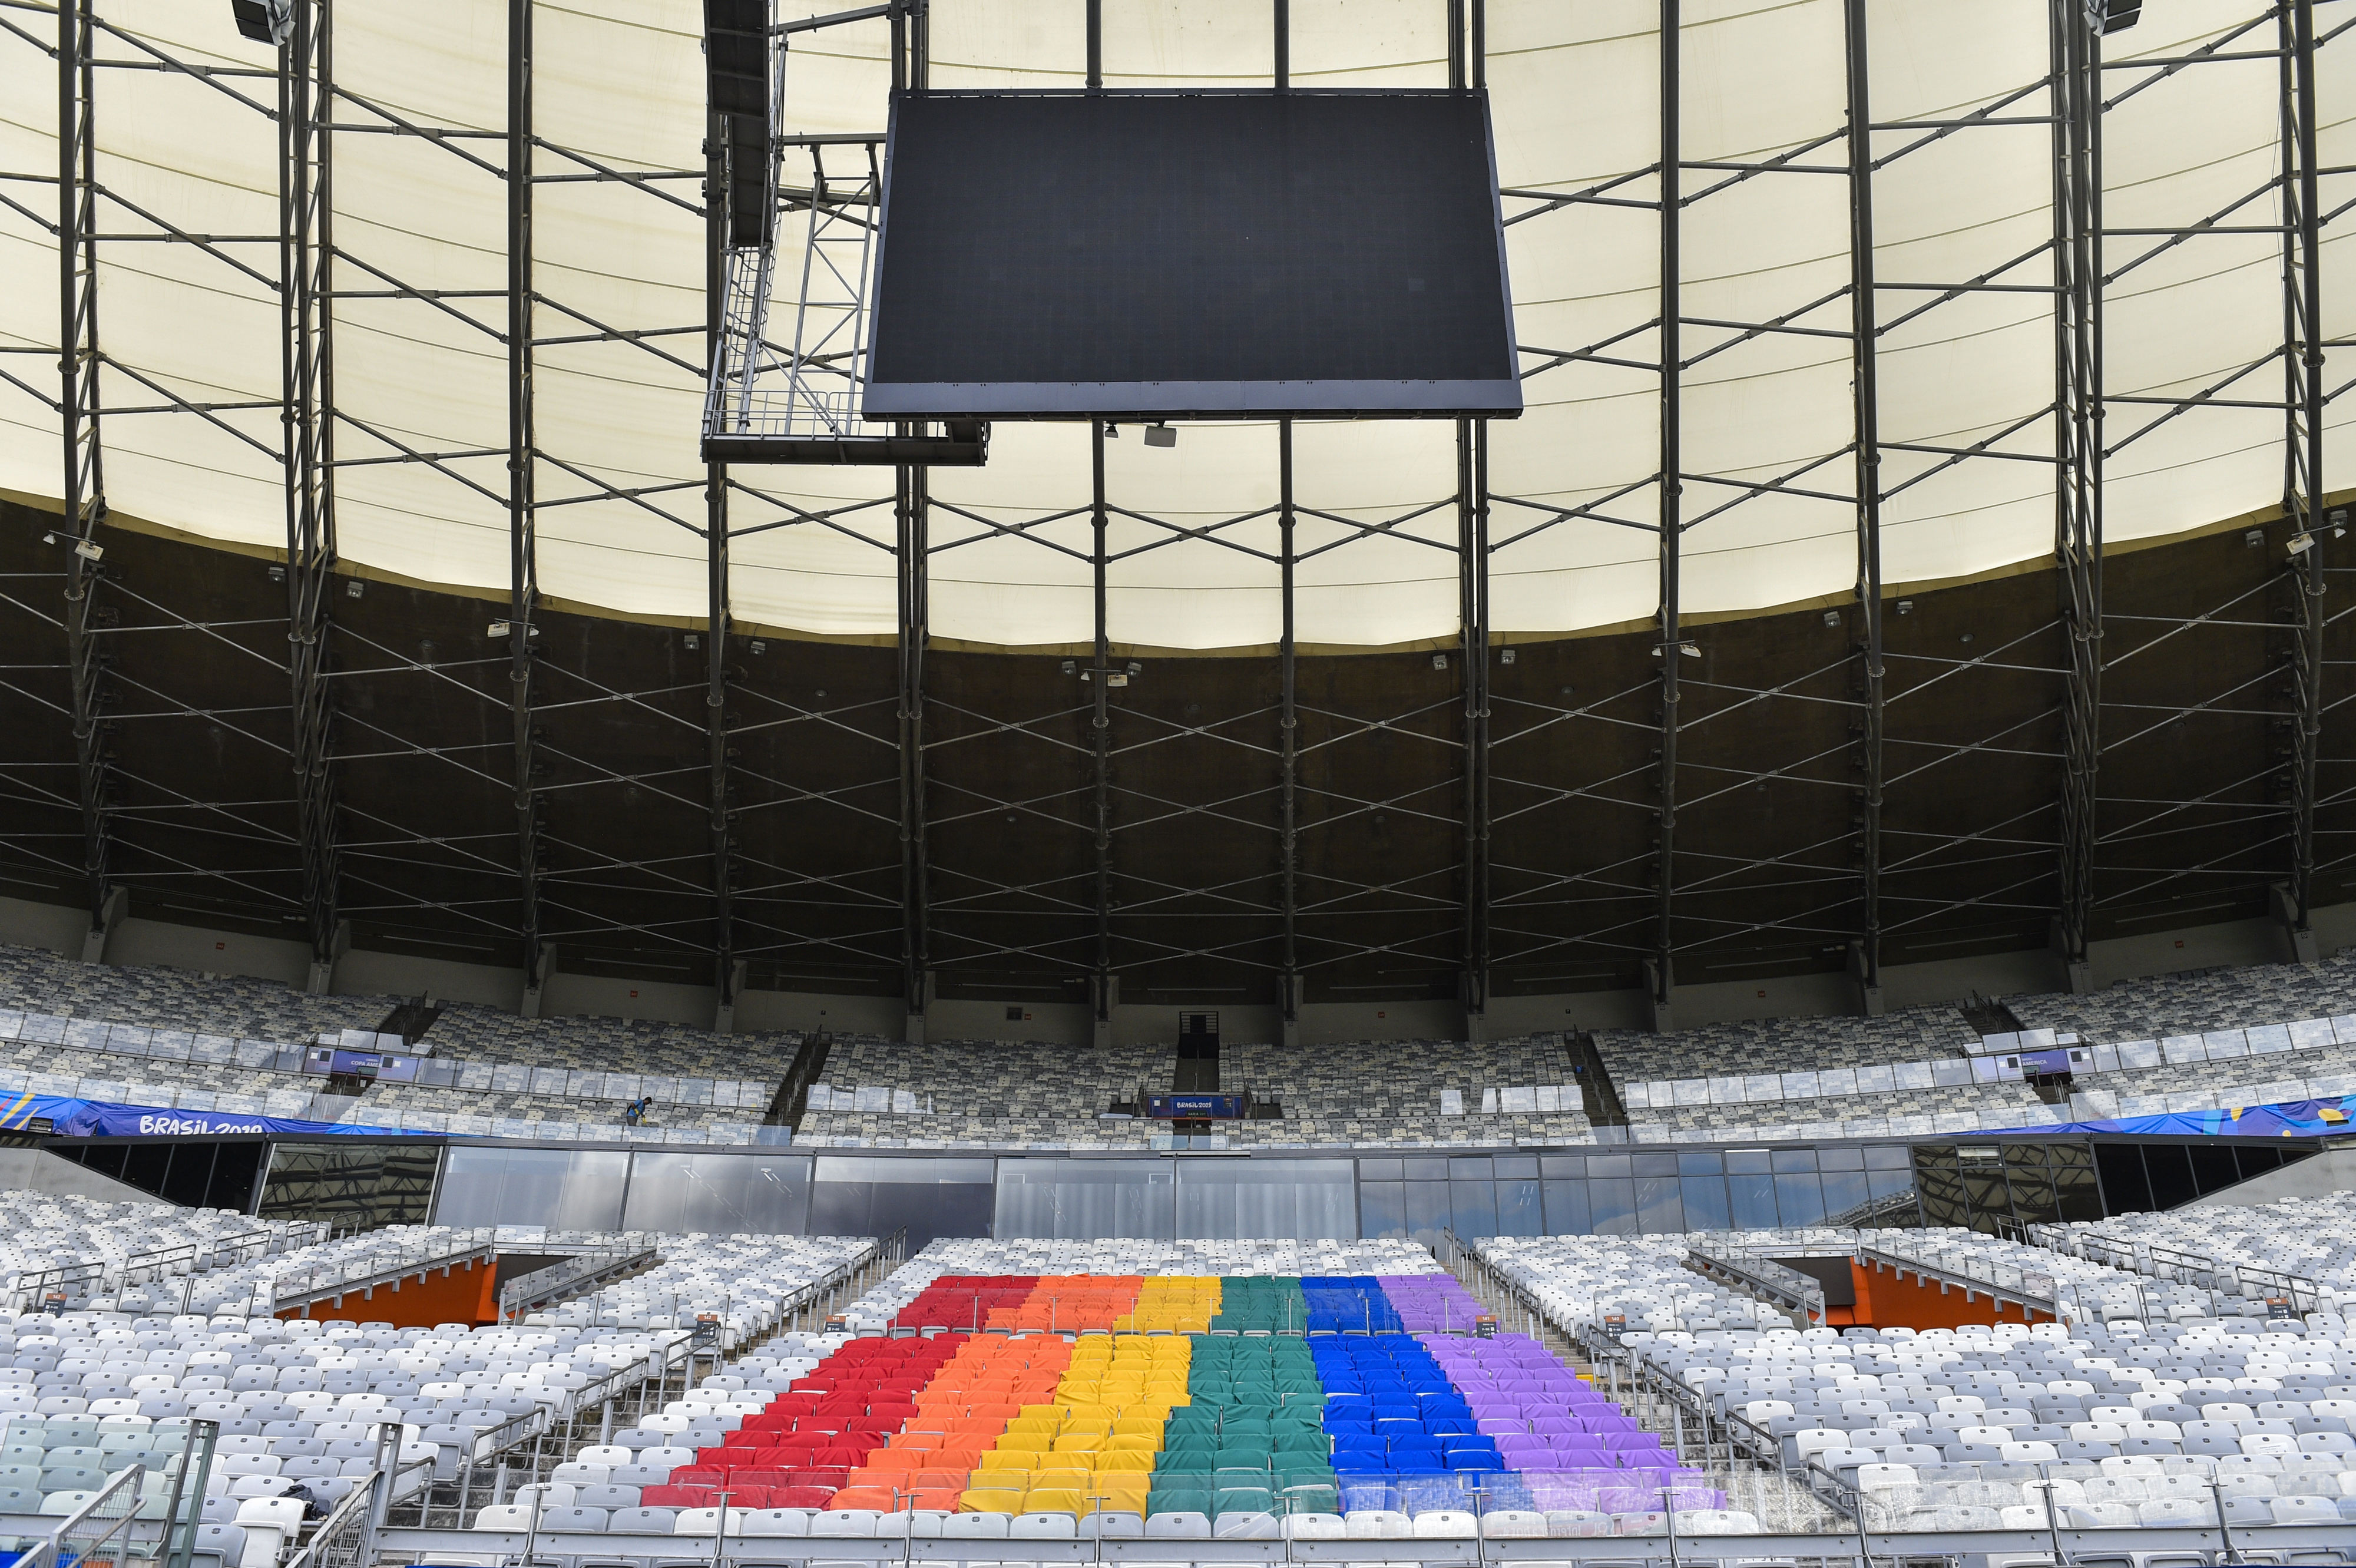 Cadeiras do estadio pintada das corres da bandeira LGBT